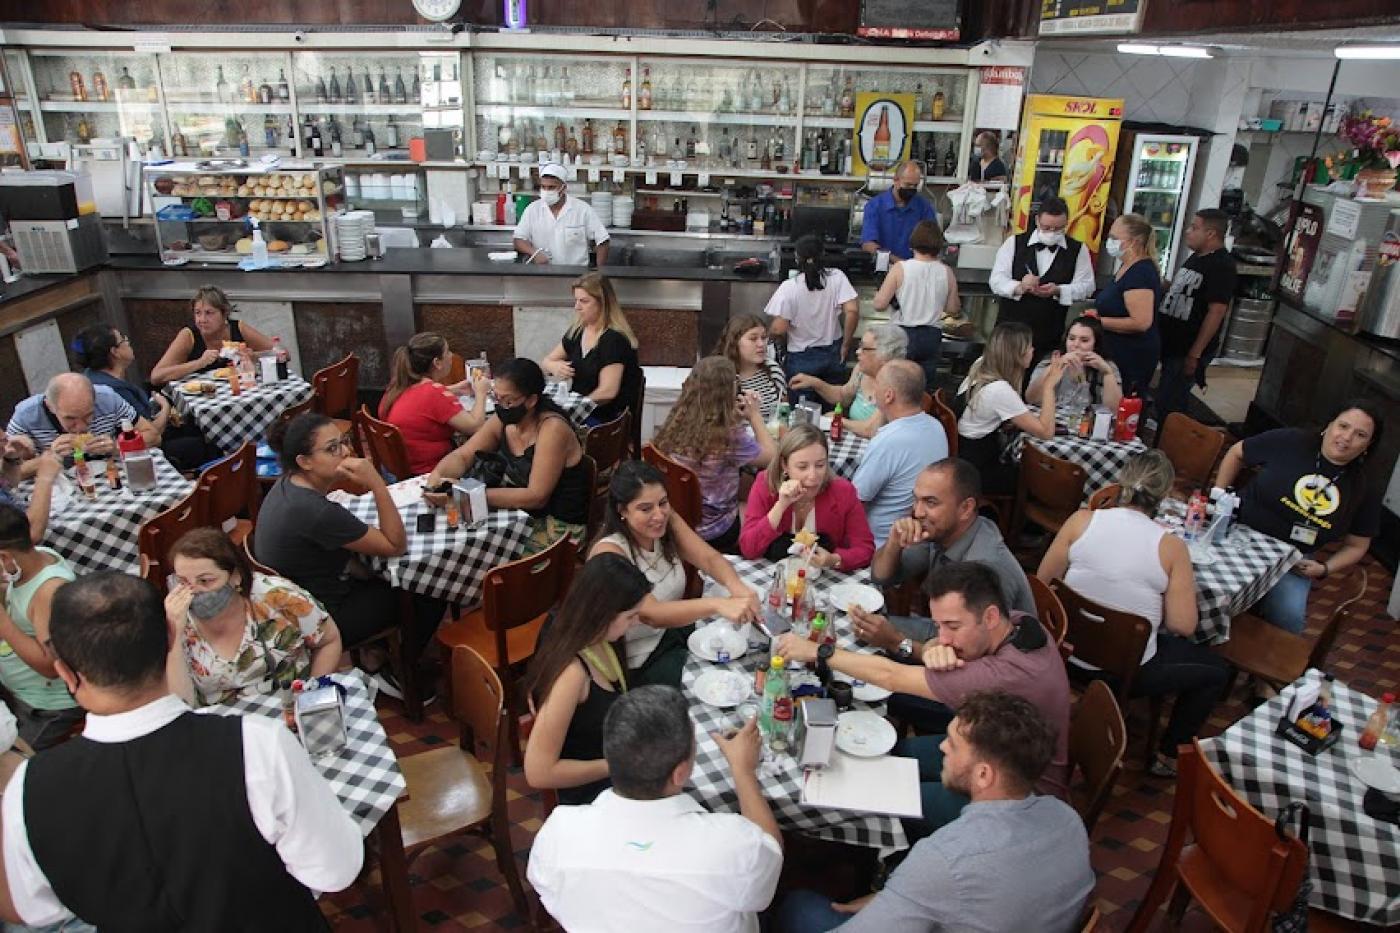 Restaurante lotado de clientes sentados em torno de mesas com toalhas estampadas. #paratodosverem